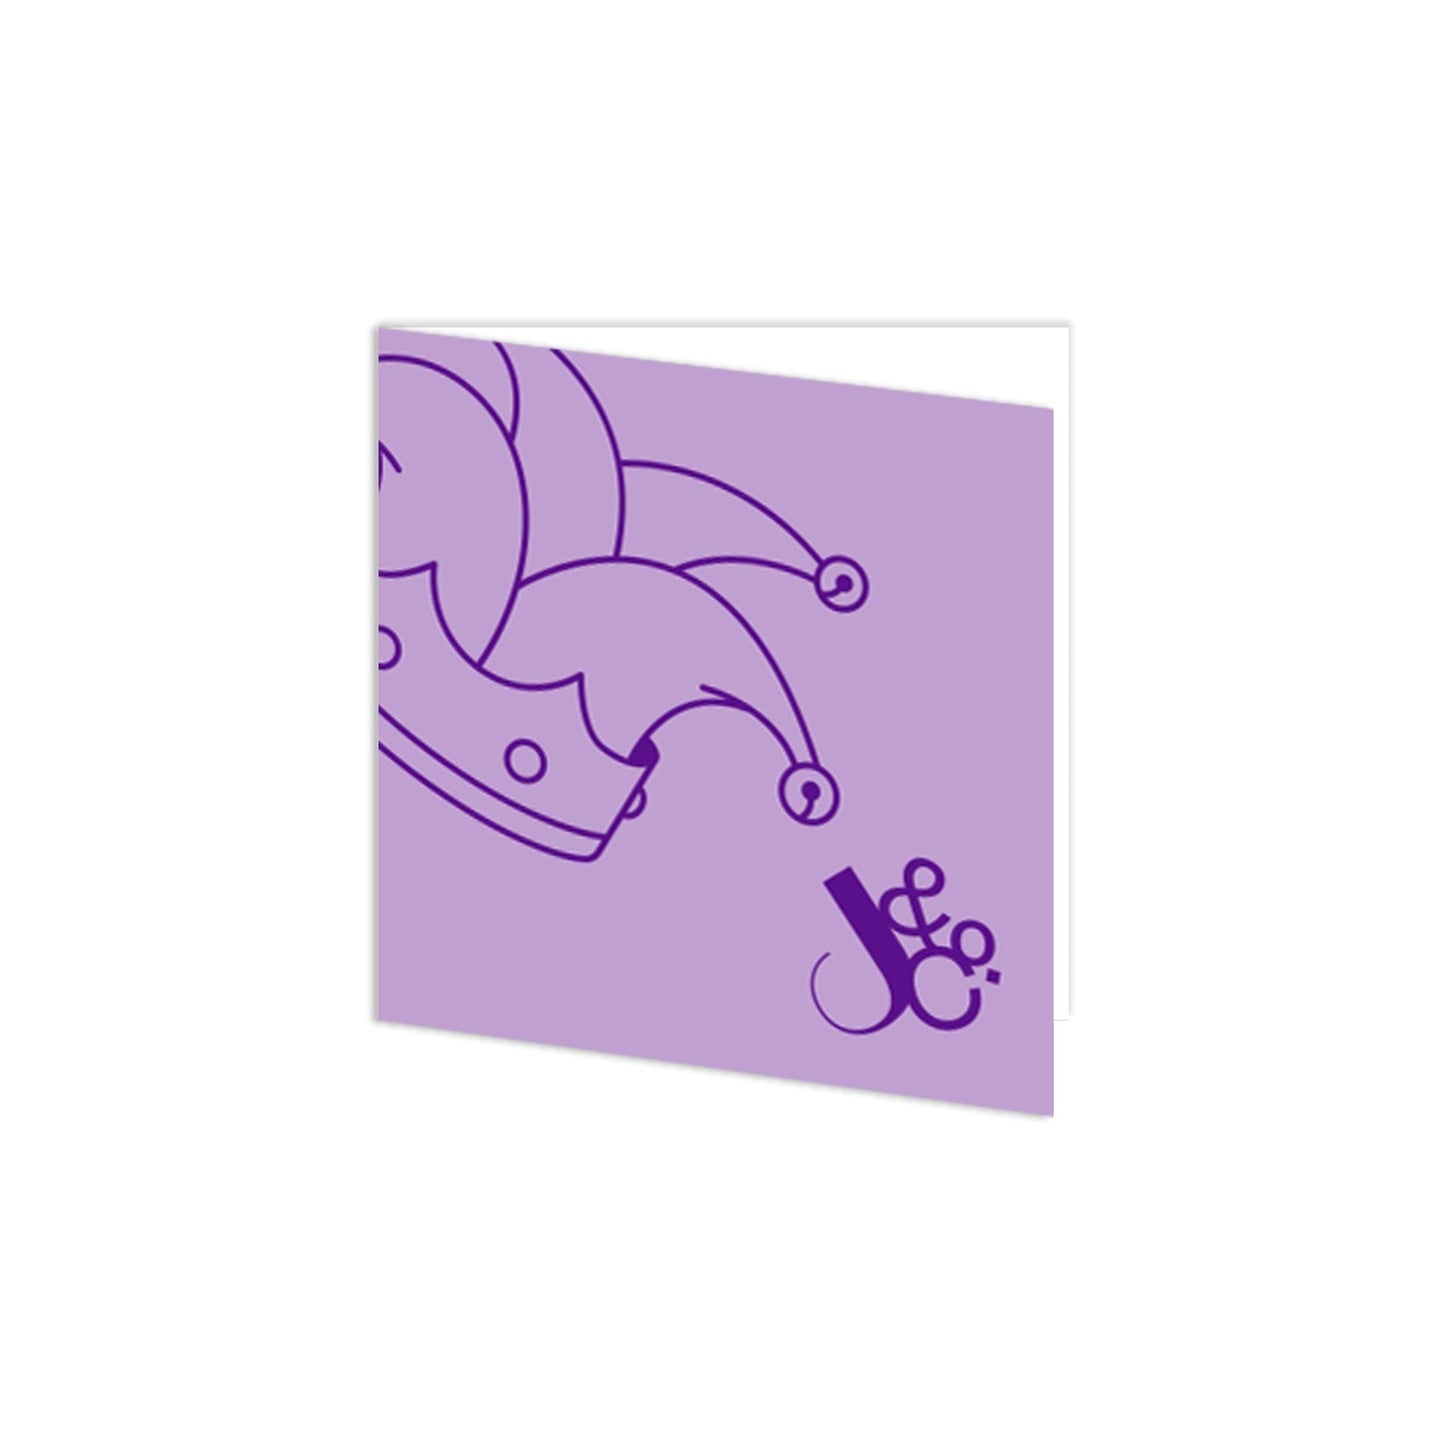 Memorra Gift Wrapper - Royal Mess Purple